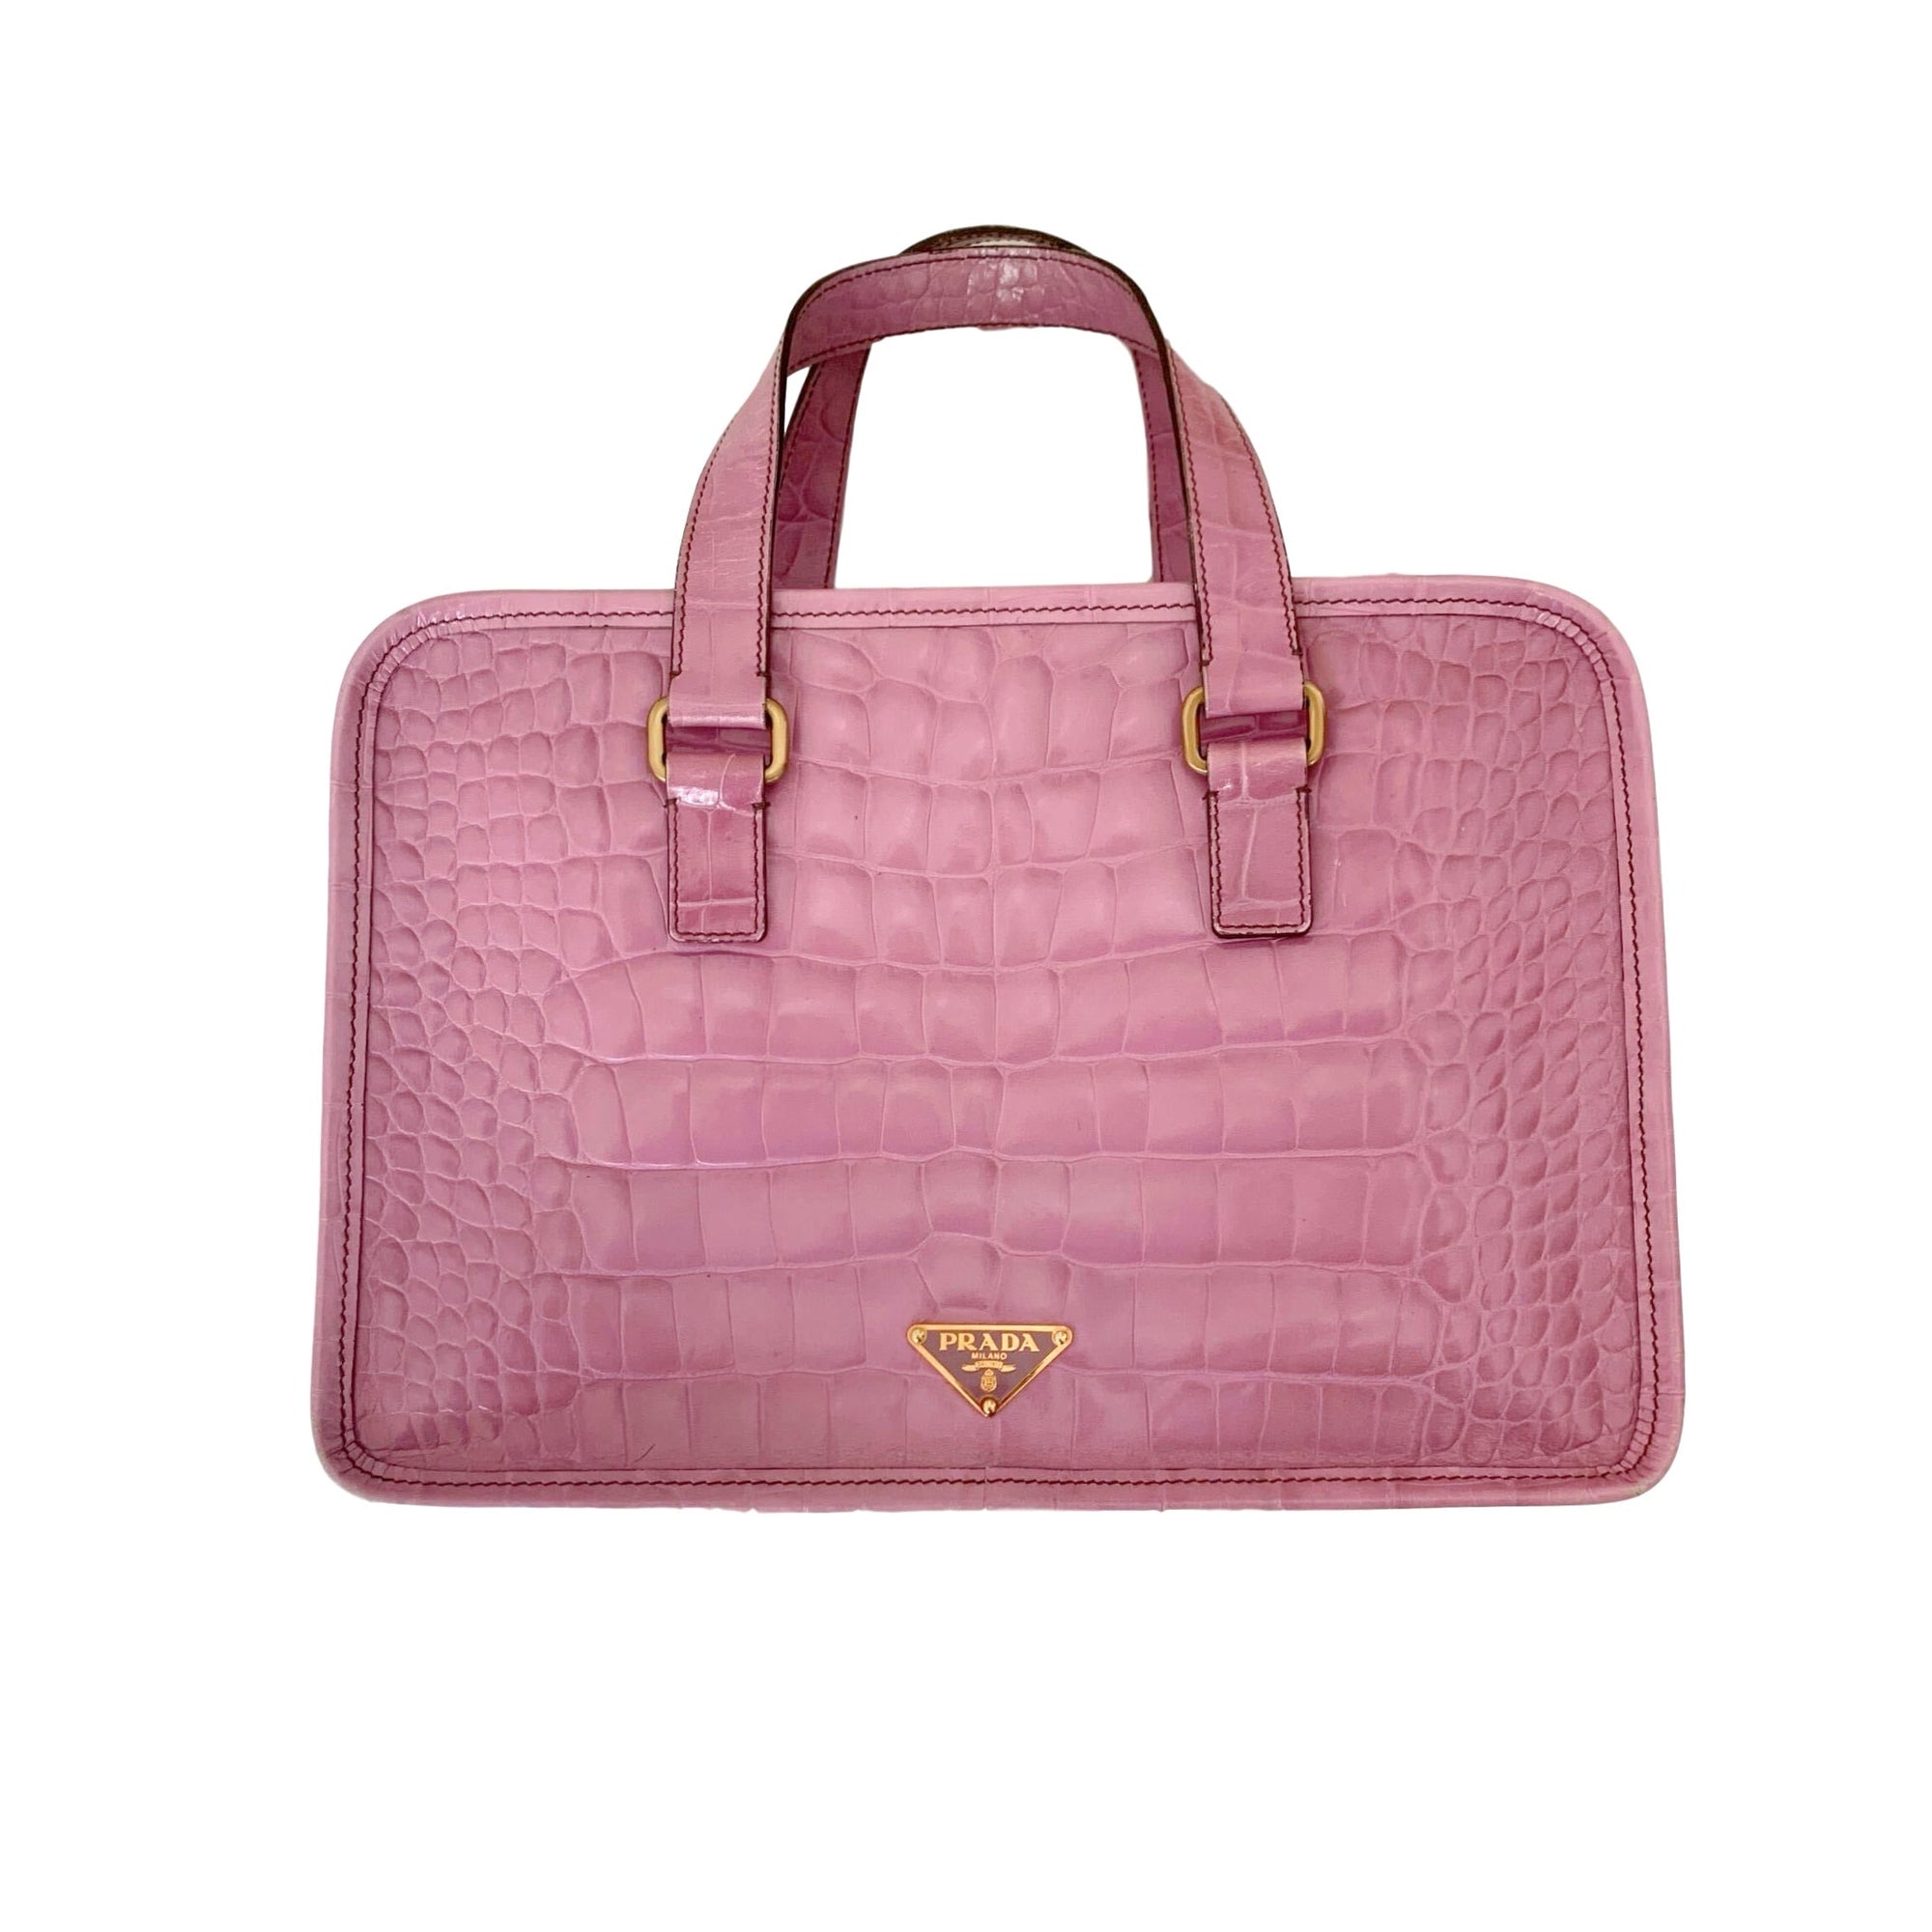 Prada Pink Croc Top Handle Bag - Handbags